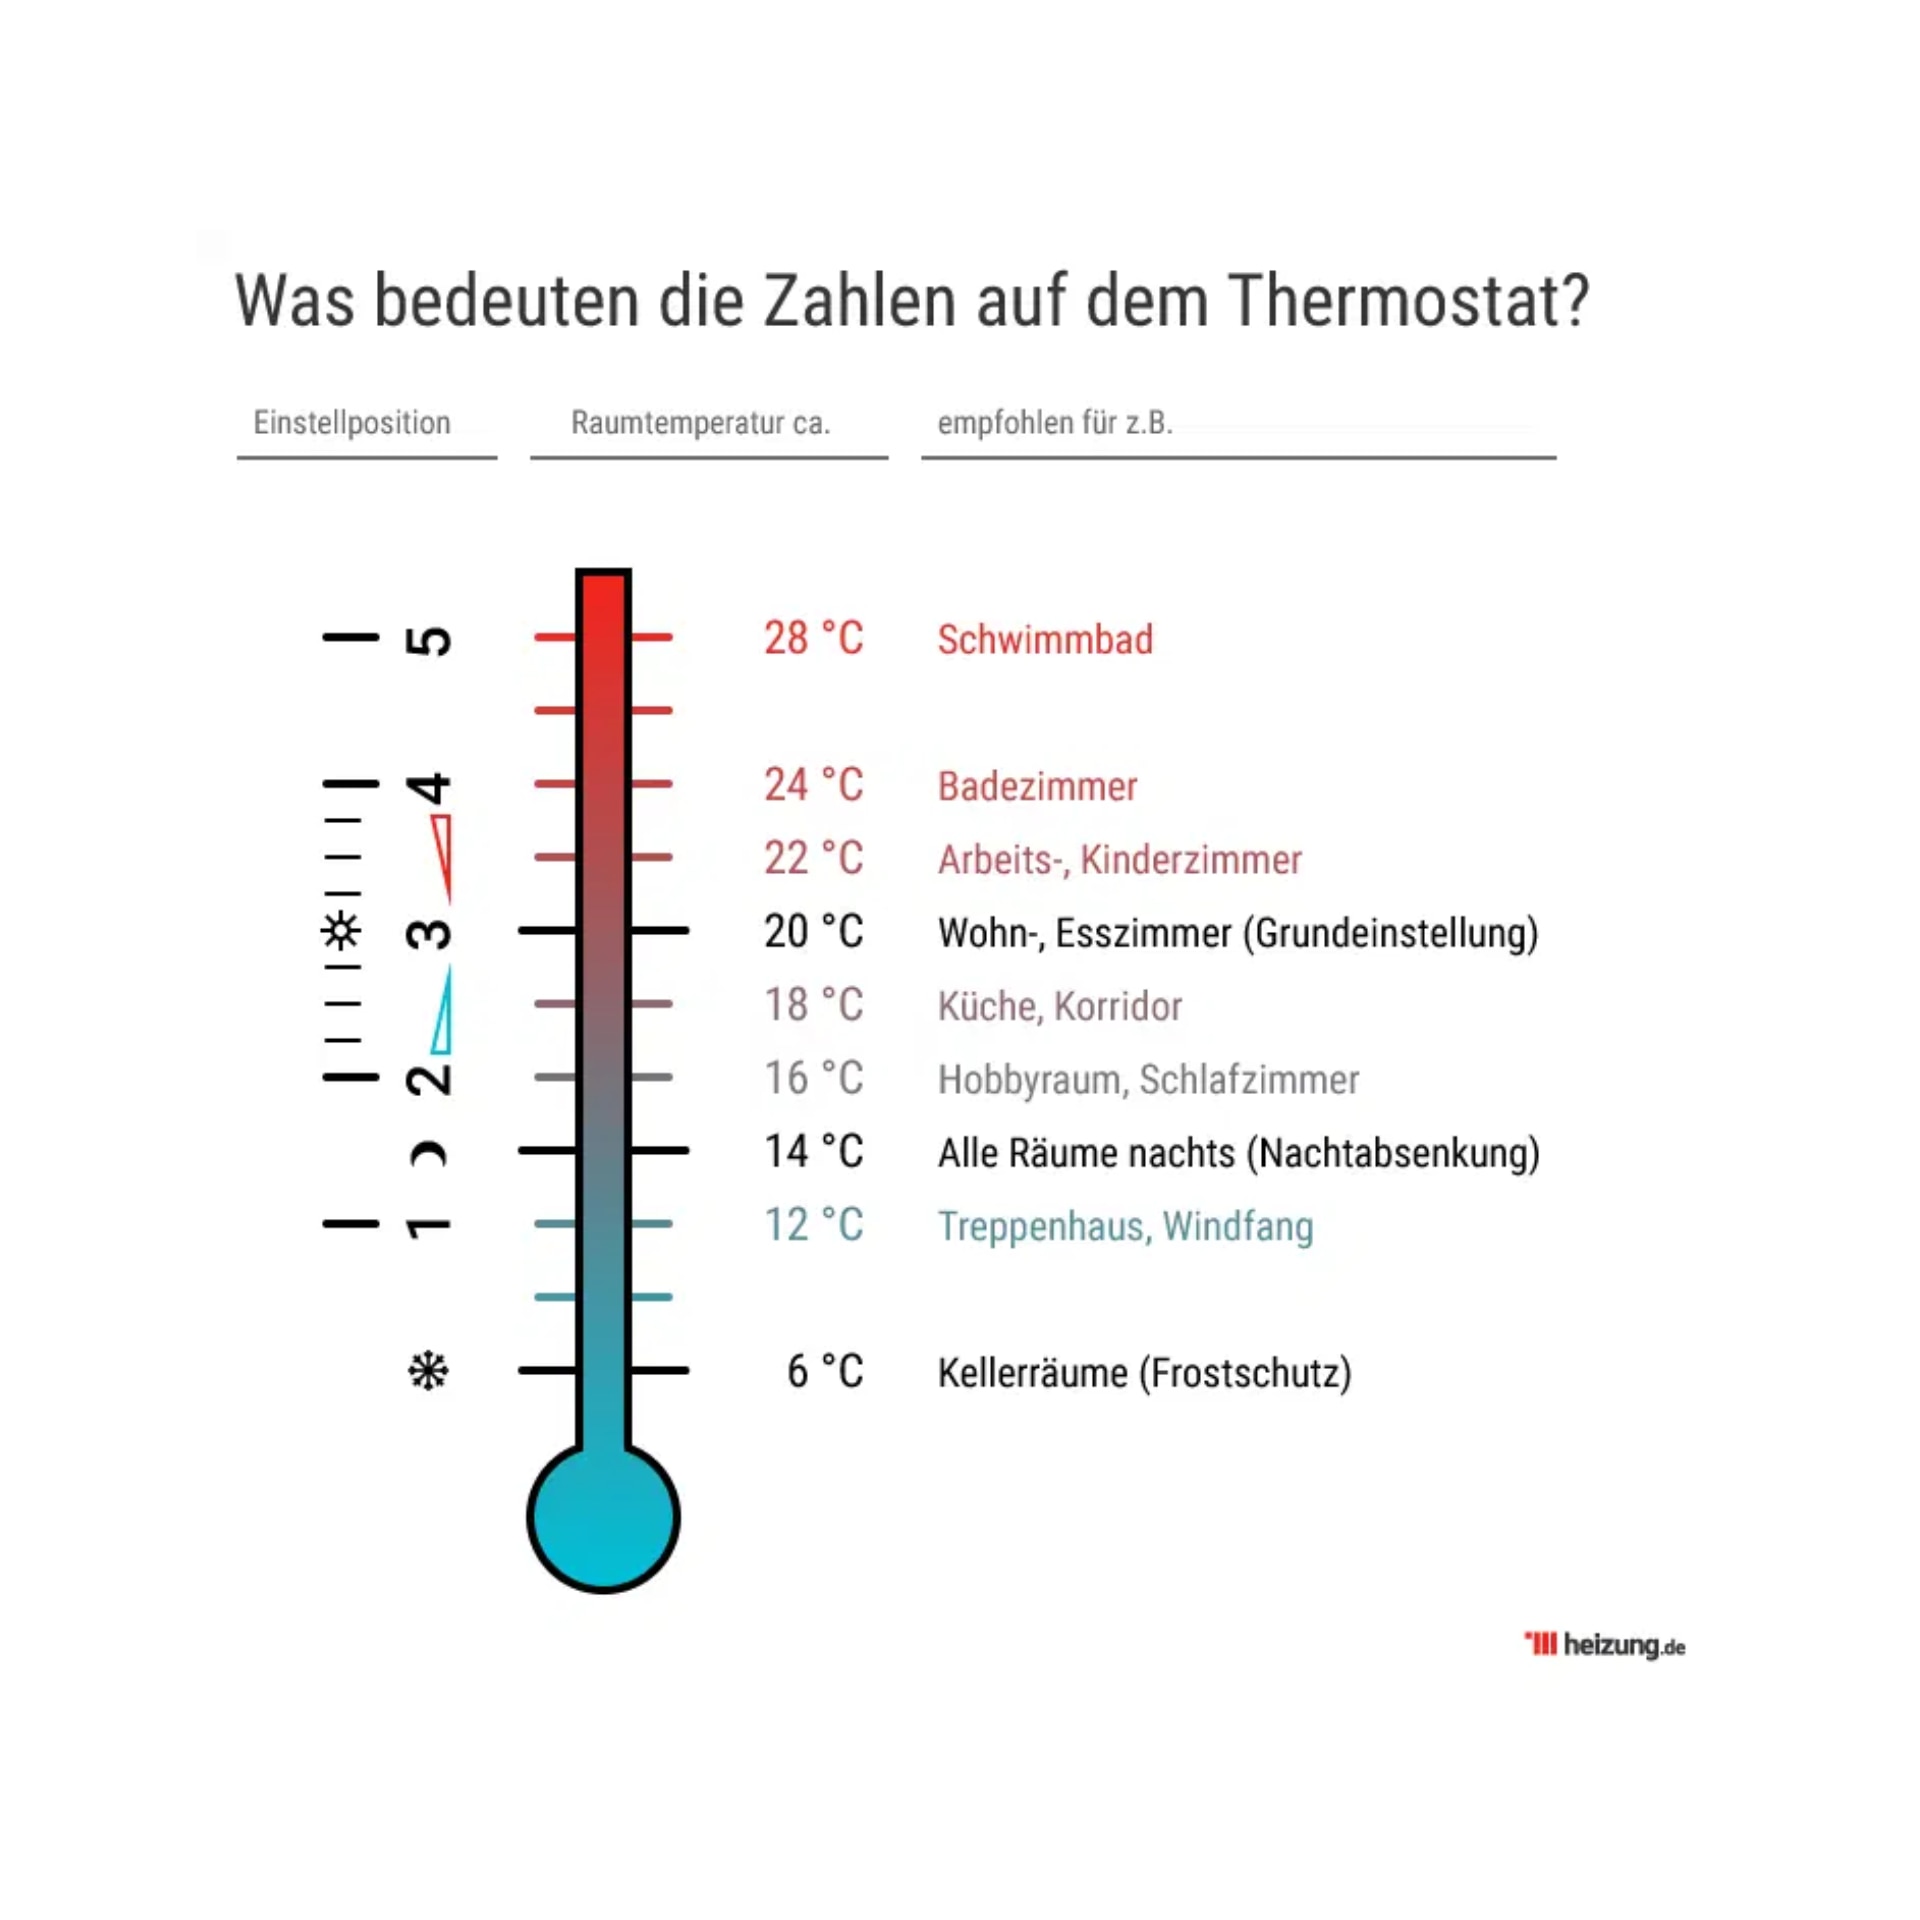 Thermostat: Die Zahlen und ihre Bedeutung verstehen